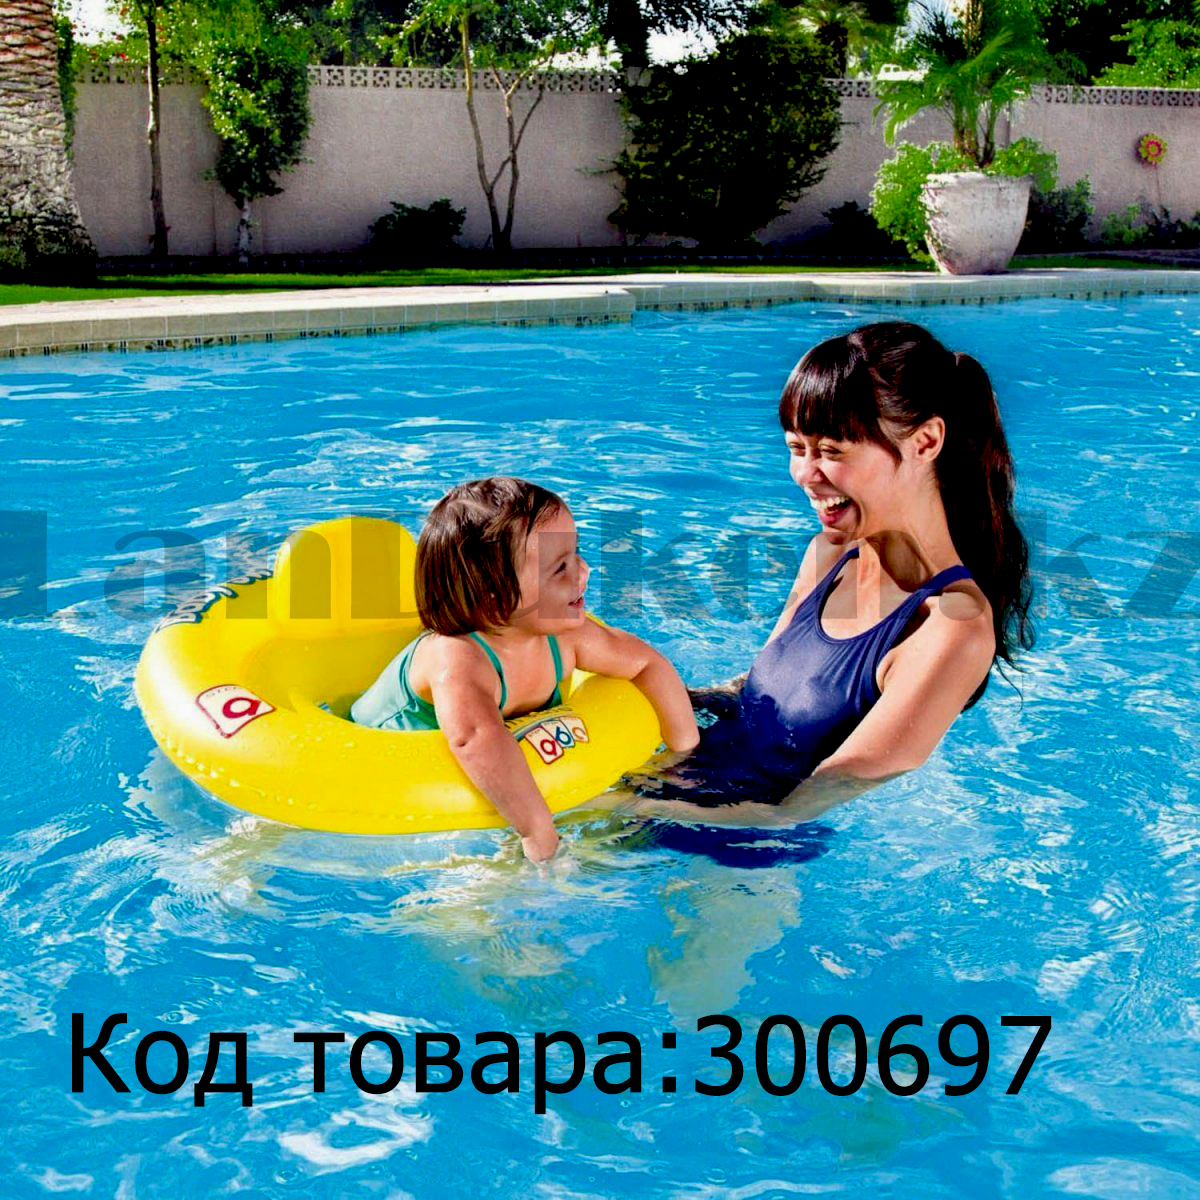 Надувной детский круг с сидением и спинкой для плавания Bestway (27" 69 см) 32027 двухкамерный, желтый, фото 1